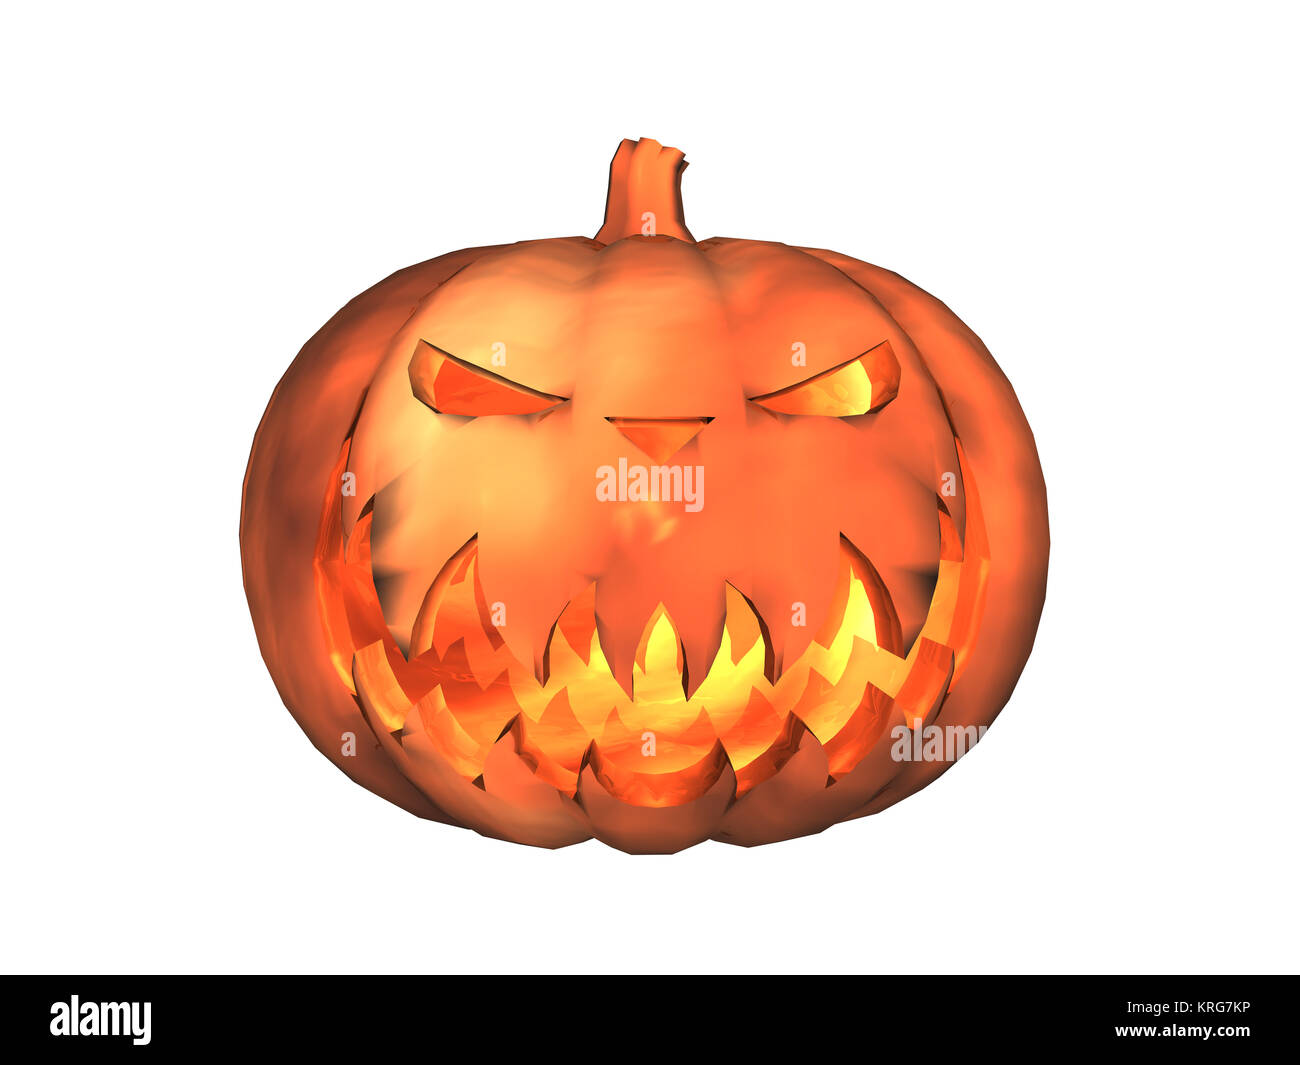 halloween pumpkin isolated Stock Photo